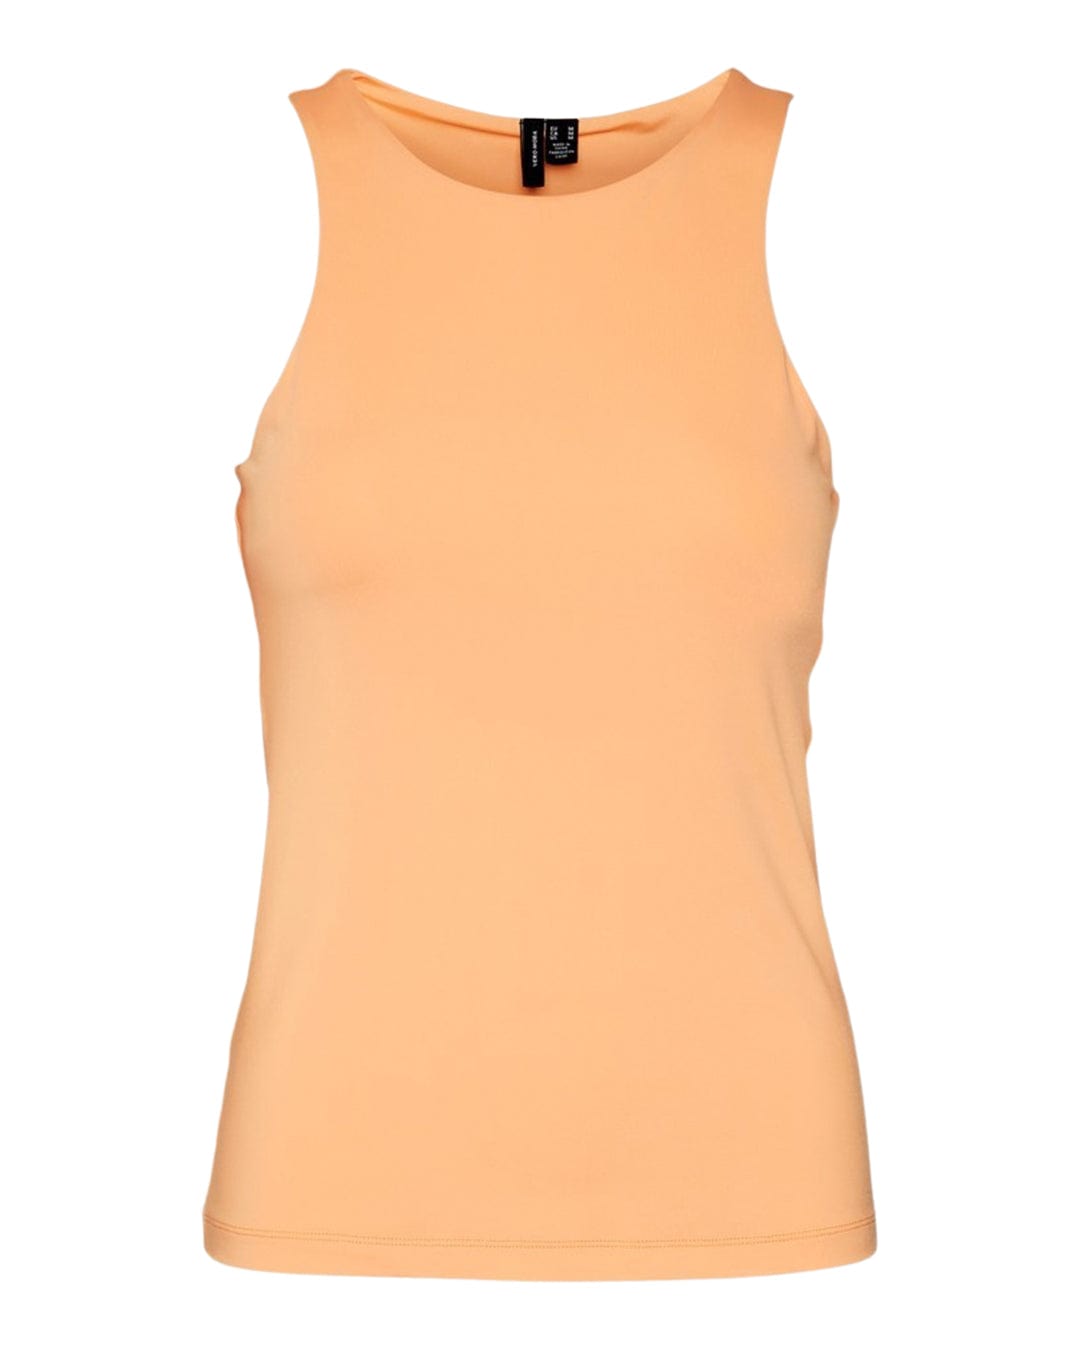 Vero Moda T-Shirts Vero Moda Bianca Orange Tank Top